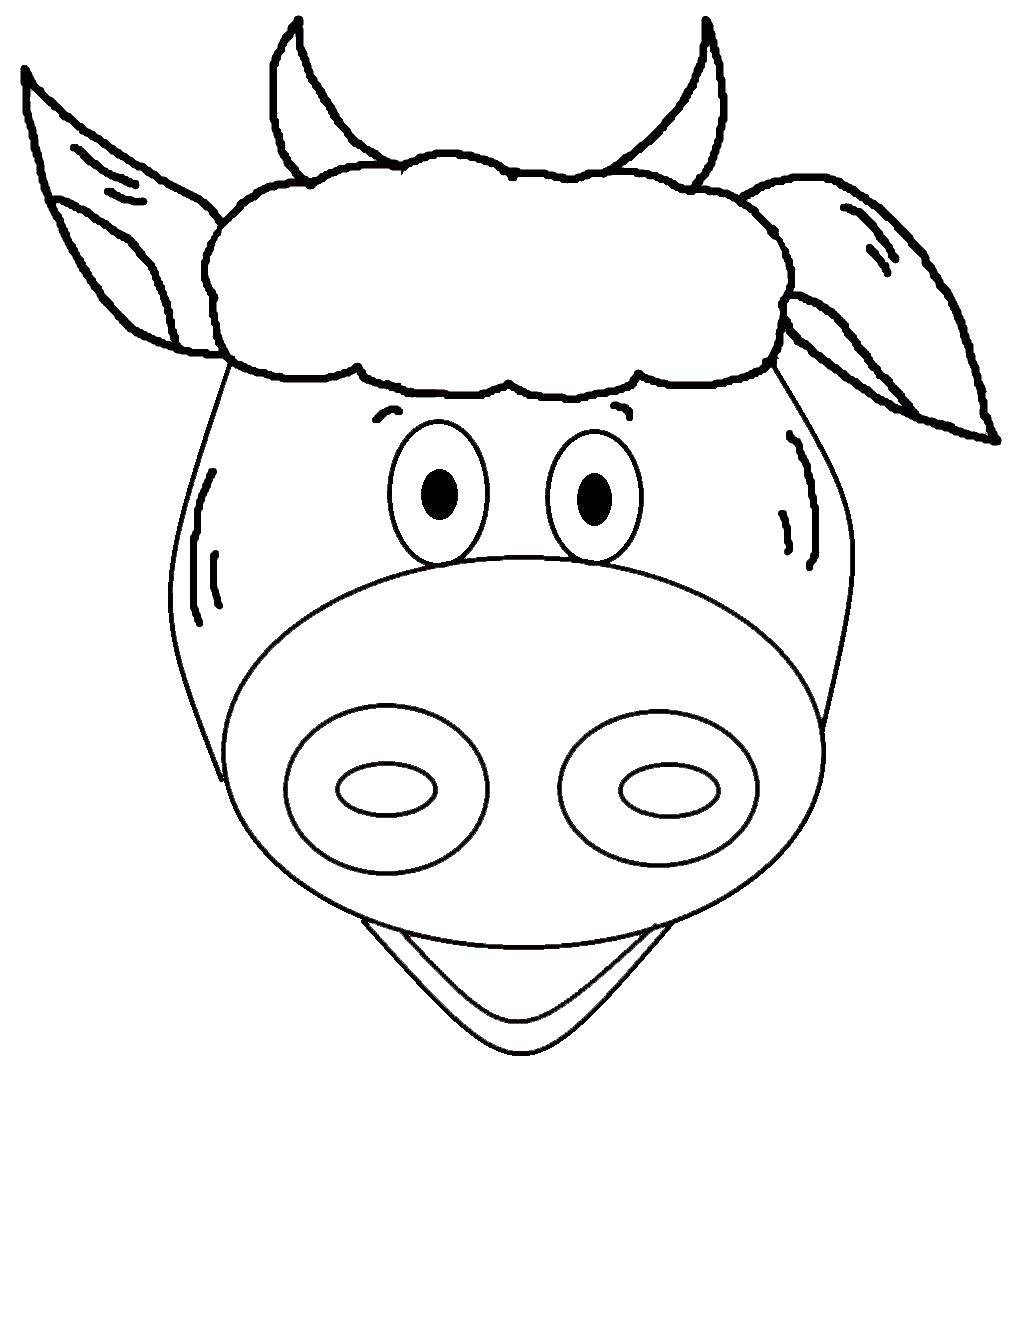 Coloring Голова коровы. Category Контур коровы для вырезания. Tags:  голова, корова, контур.